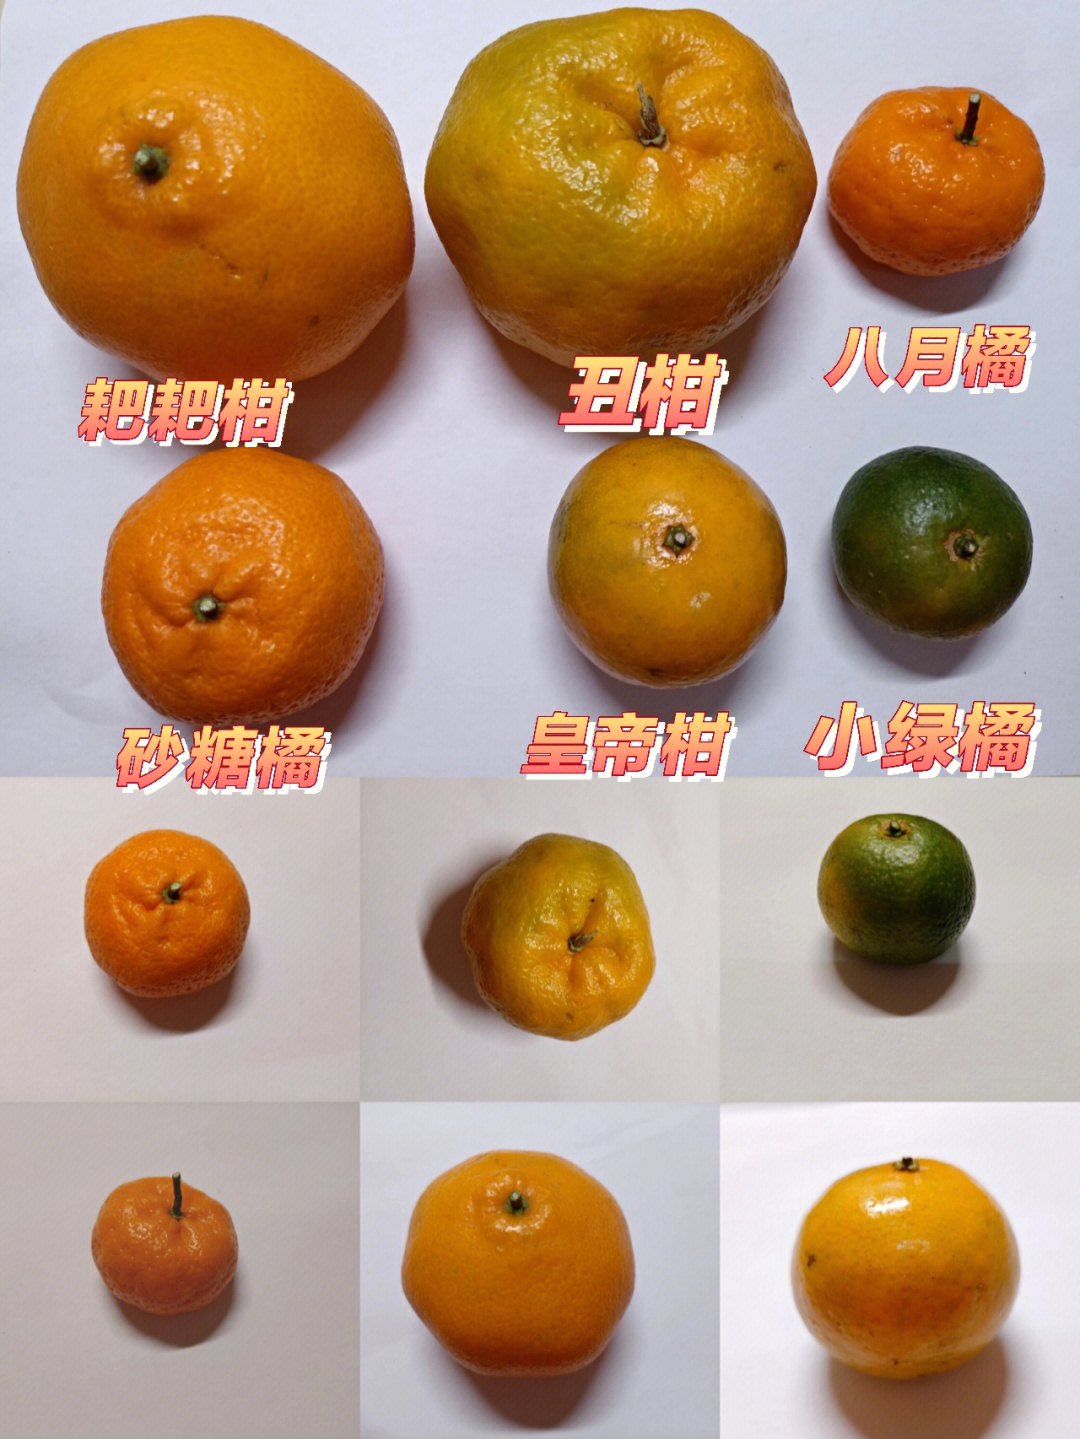 柑橘品种图片和名称图片